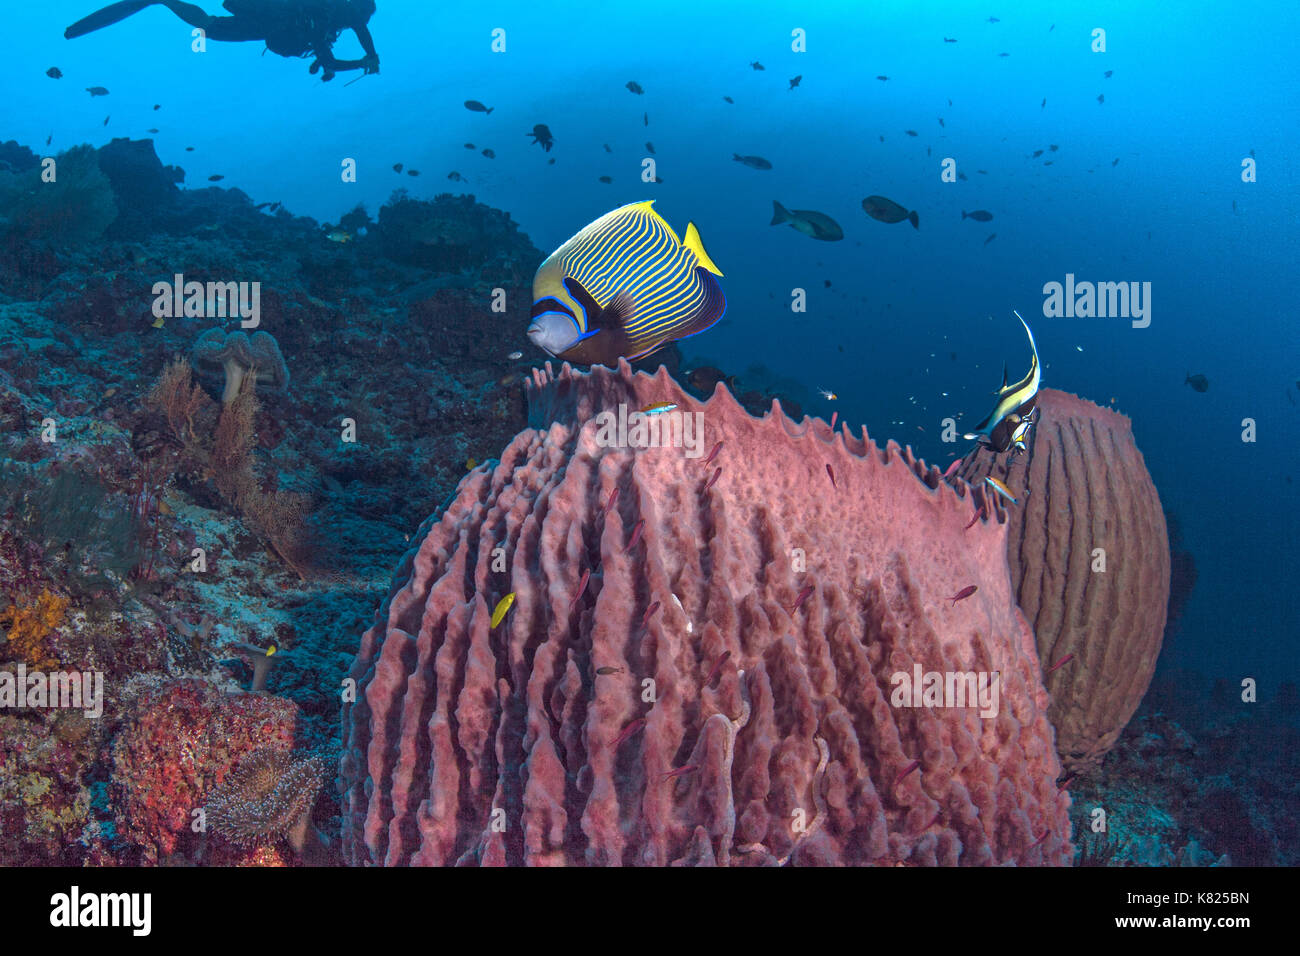 Kaiser Kaiserfische und Moorrish Idol schweben über grossen Schwämmen. Spartly Island, South China Sea. Stockfoto